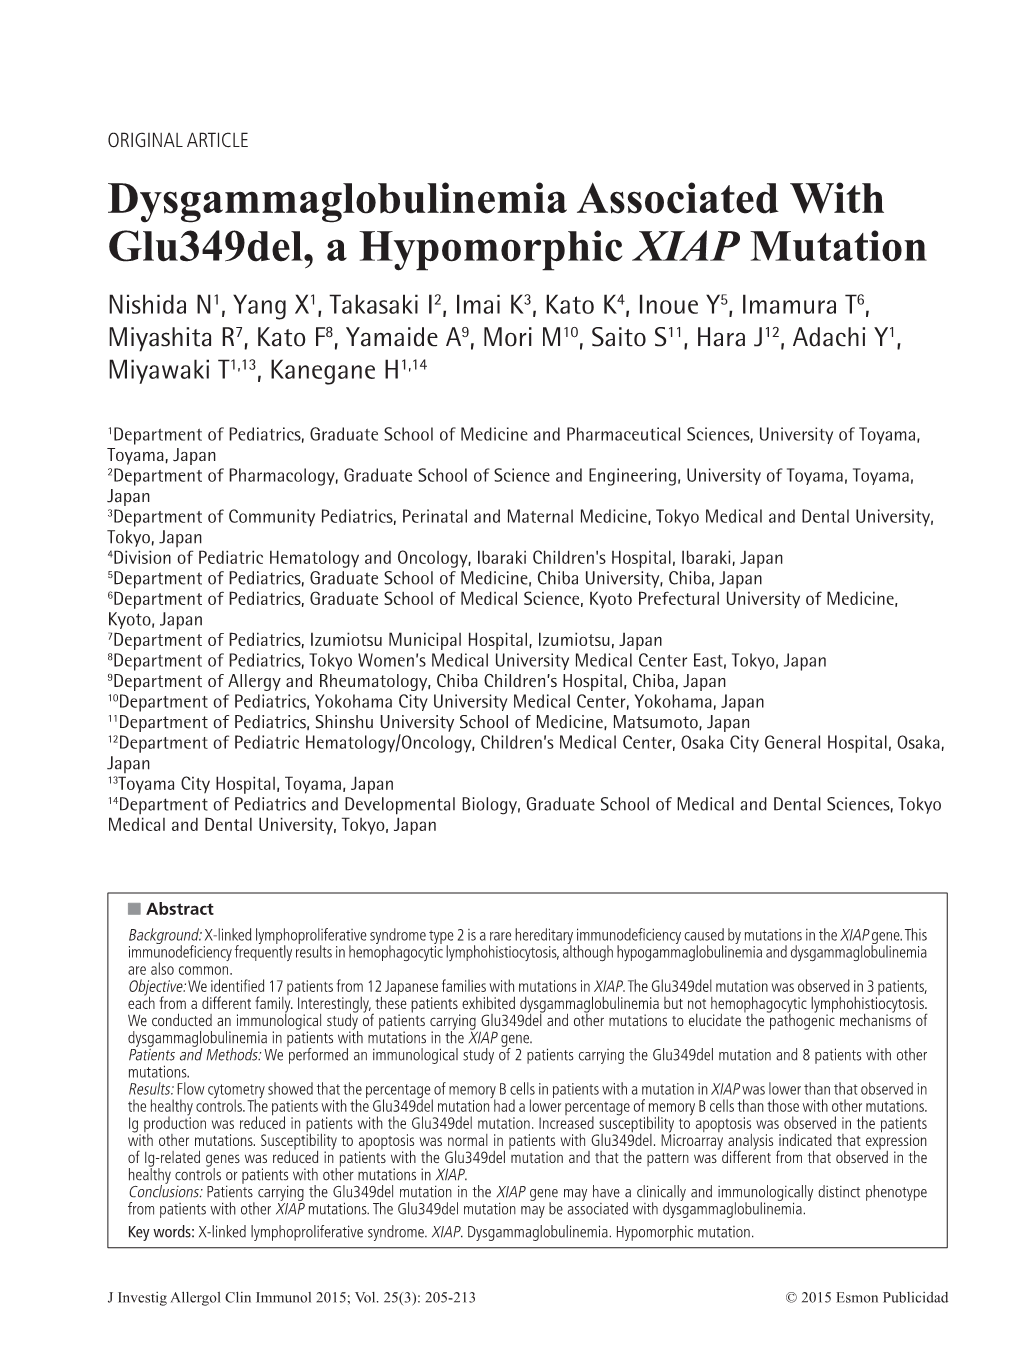 Dysgammaglobulinemia Associated with Glu349del, a Hypomorphic